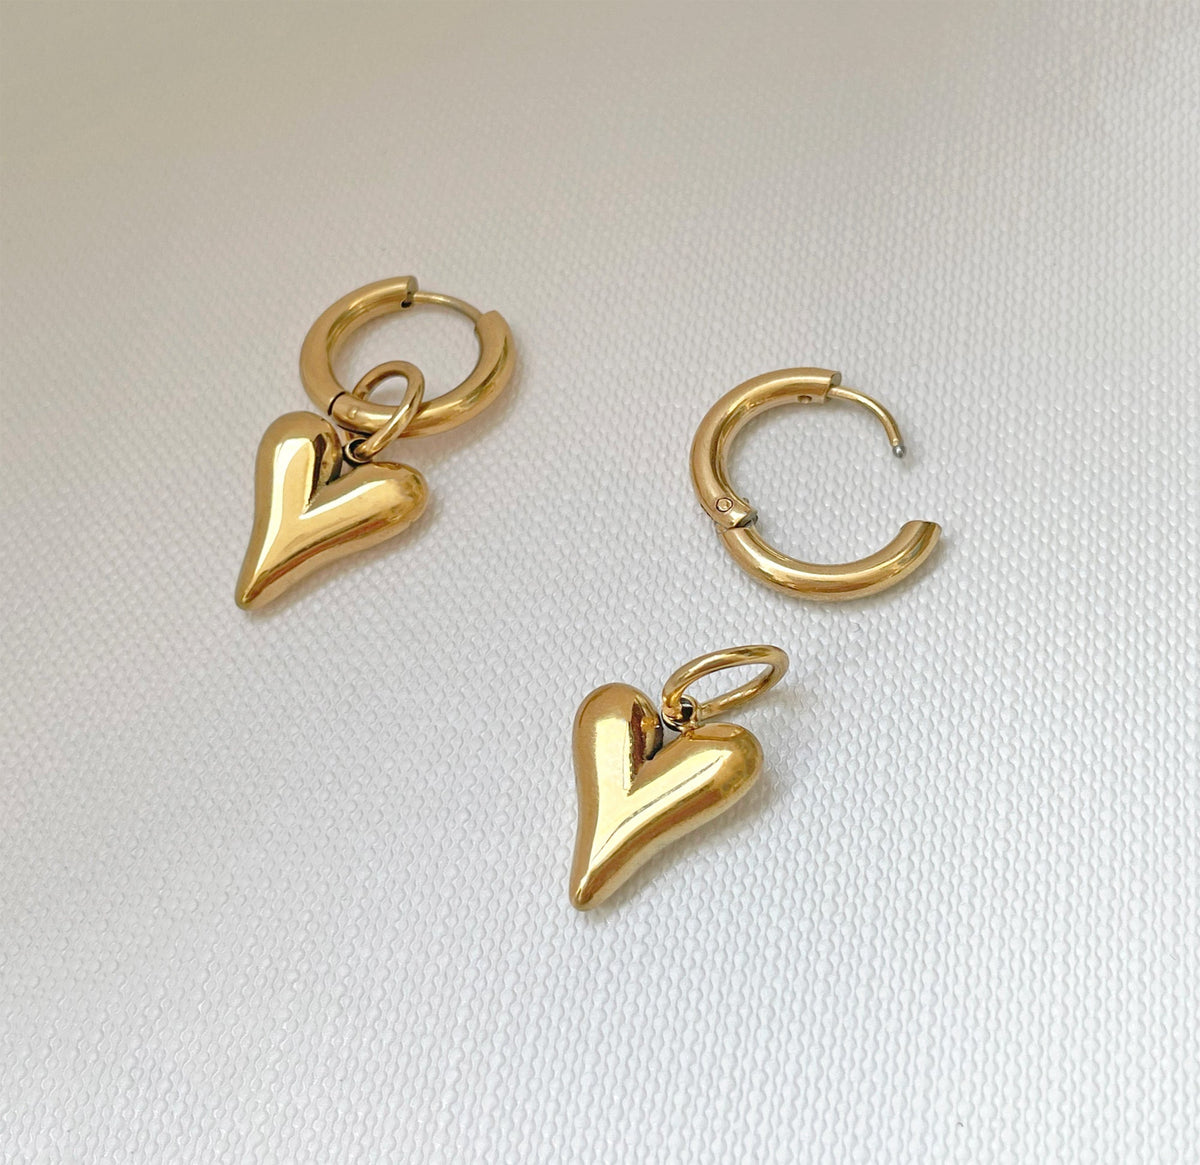 gold heart huggie earrings watereproof jewelry